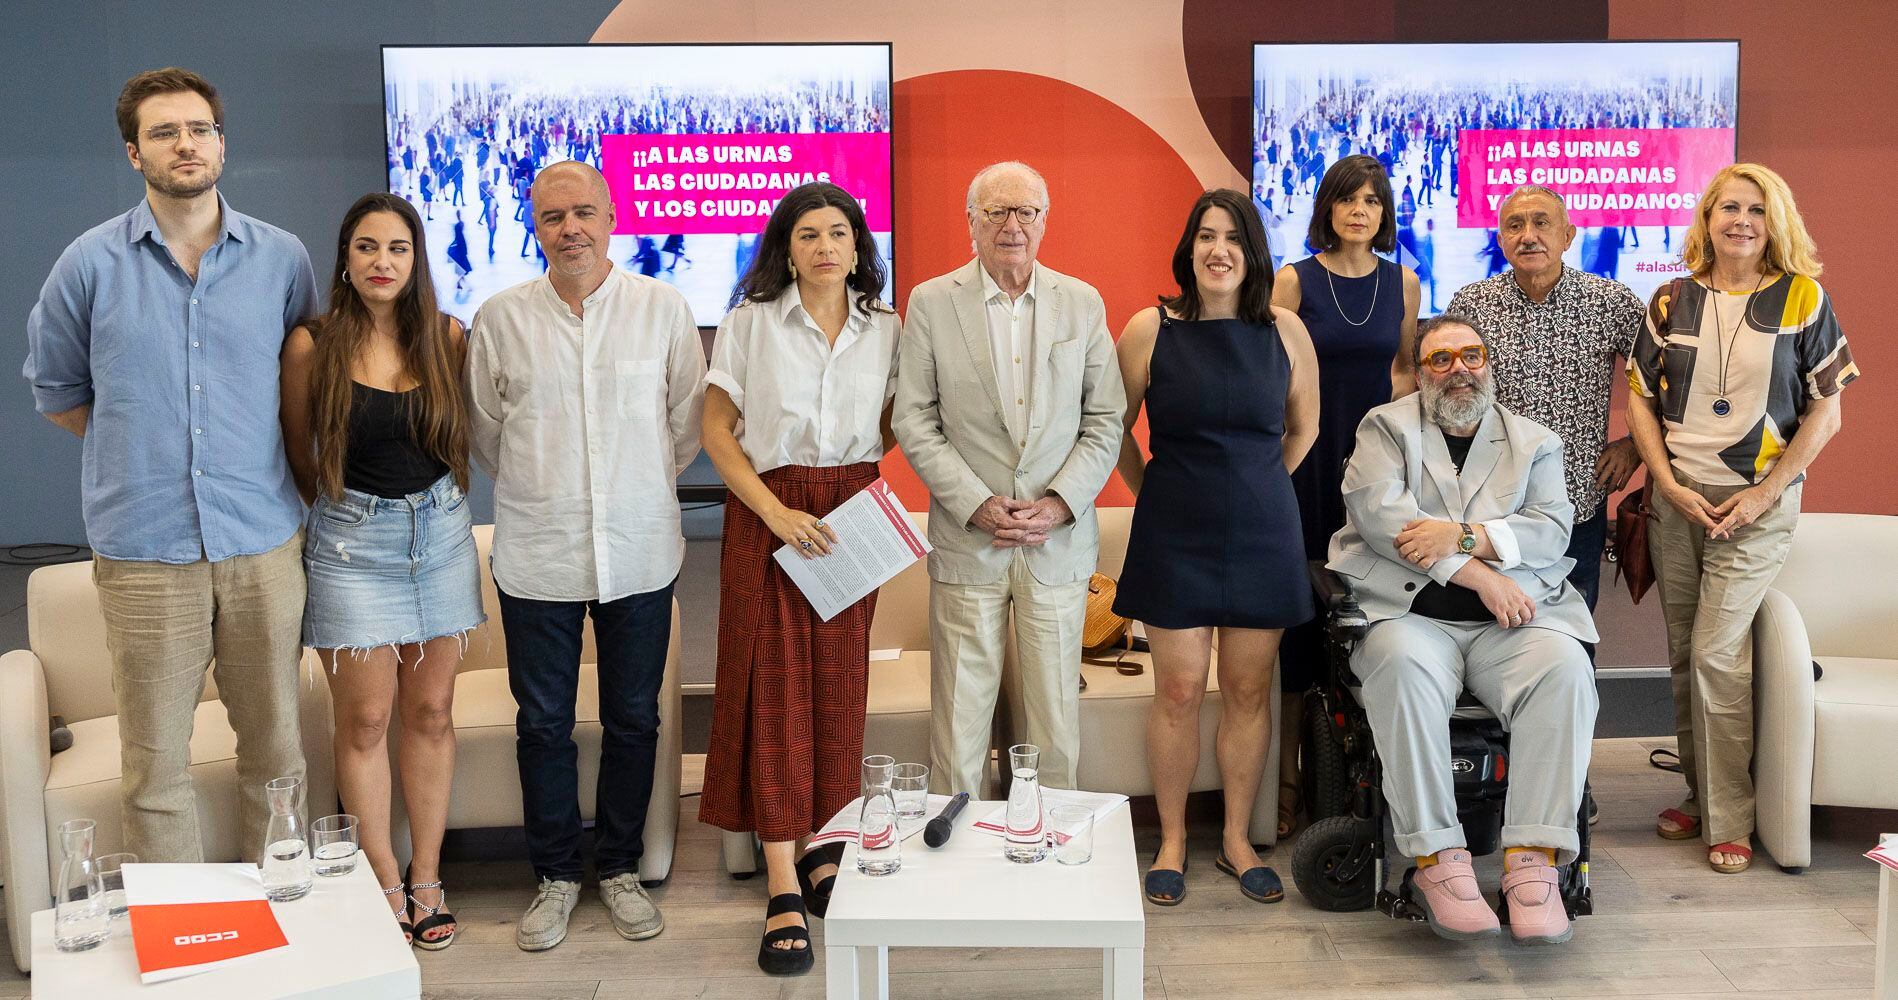 Representantes del mundo de la Cultura y de los sindicatos presentan un manifiesto firmado por 300 personalidades pidiendo el voto por las fuerzas progresistas este martes en el Círculo de Bellas Artes de Madrid.